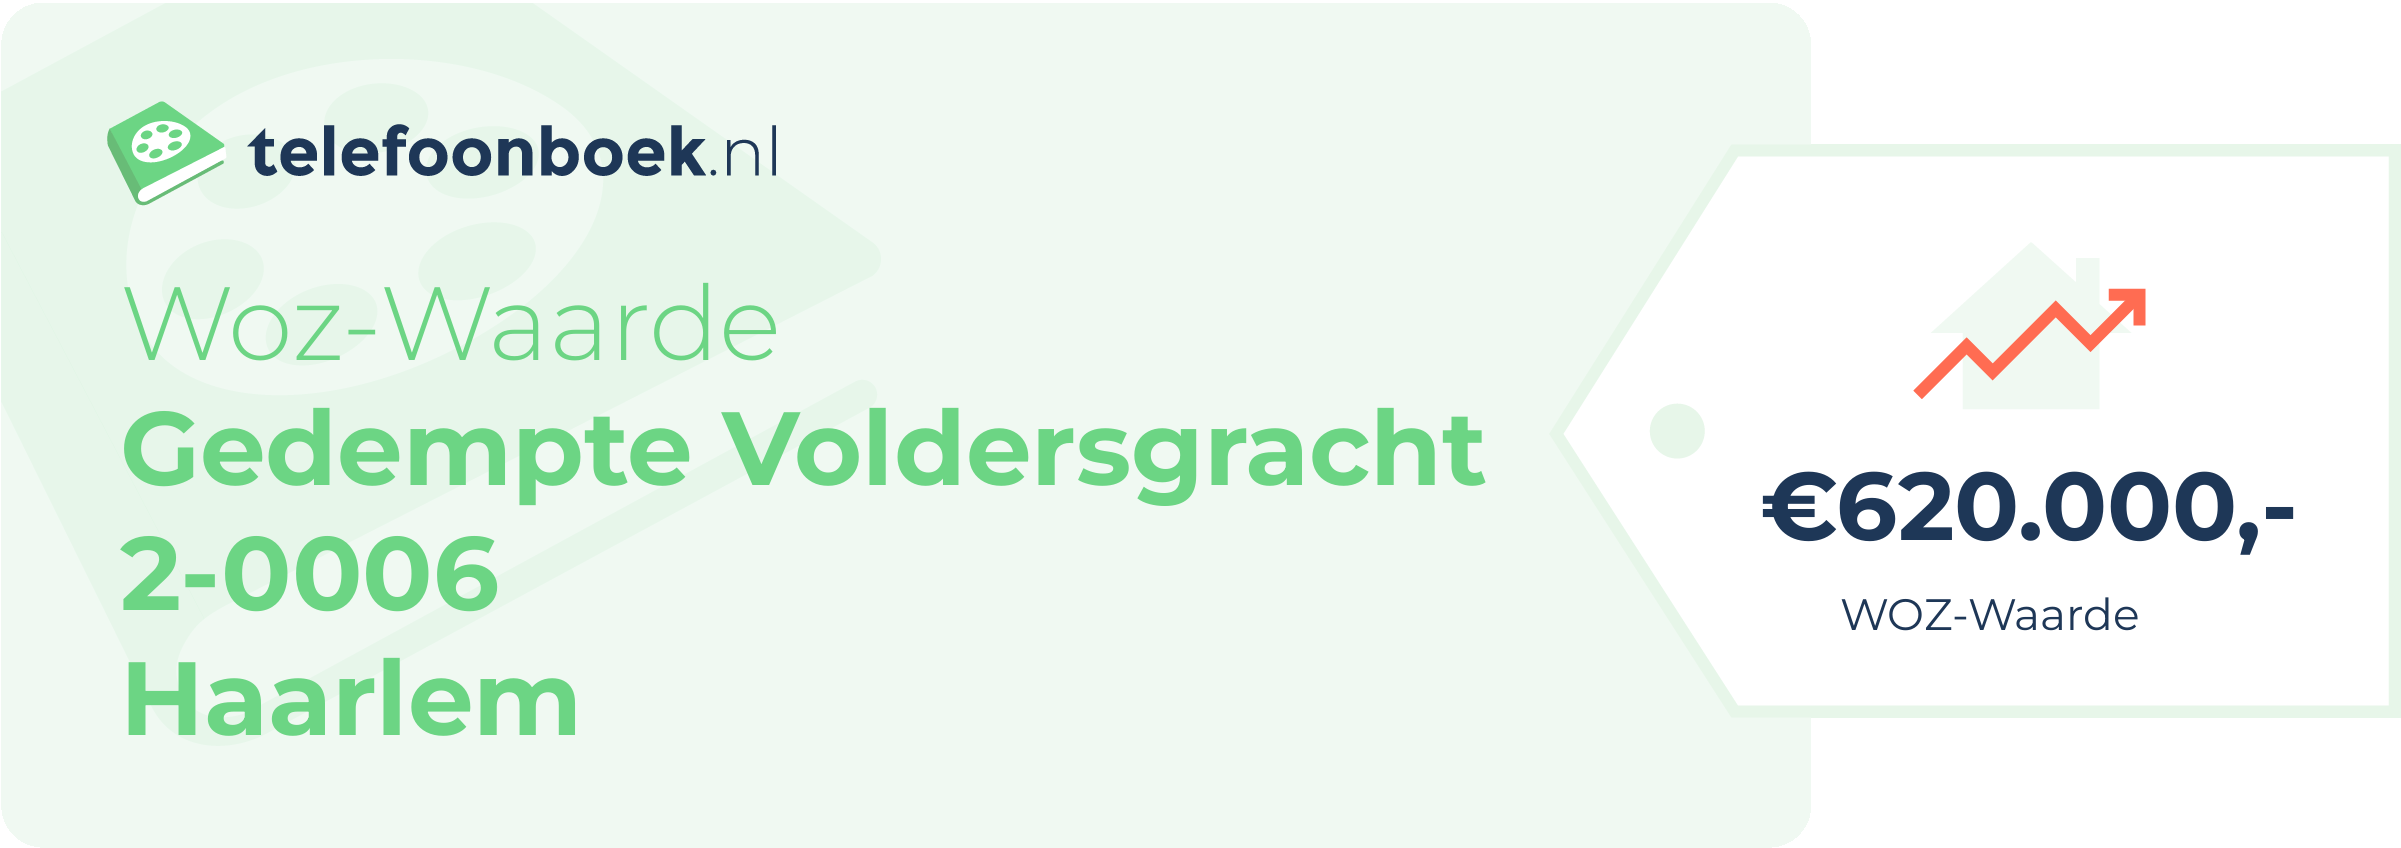 WOZ-waarde Gedempte Voldersgracht 2-0006 Haarlem